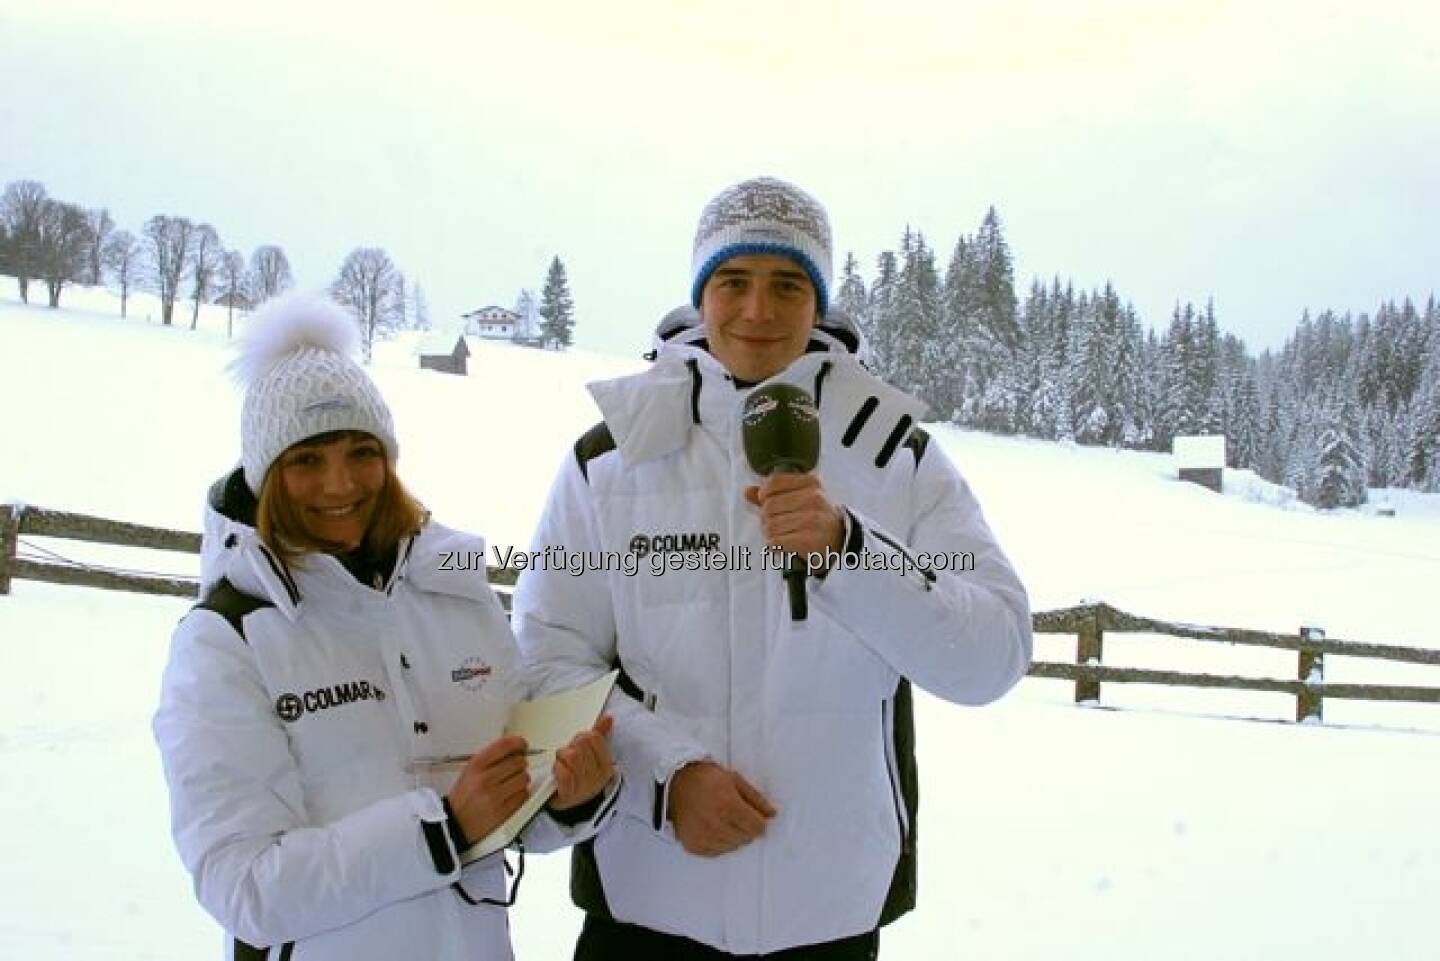 voestalpine-Blogger Johanna Holzer und Markus Kerschbamer bei der alpinen Ski WM - was sie zu sagen haben, siehe http://voestalpine-wm-blog.at/2013/02/03/die-wm-kann-kommen/#.UQ6b5I7aK_Q